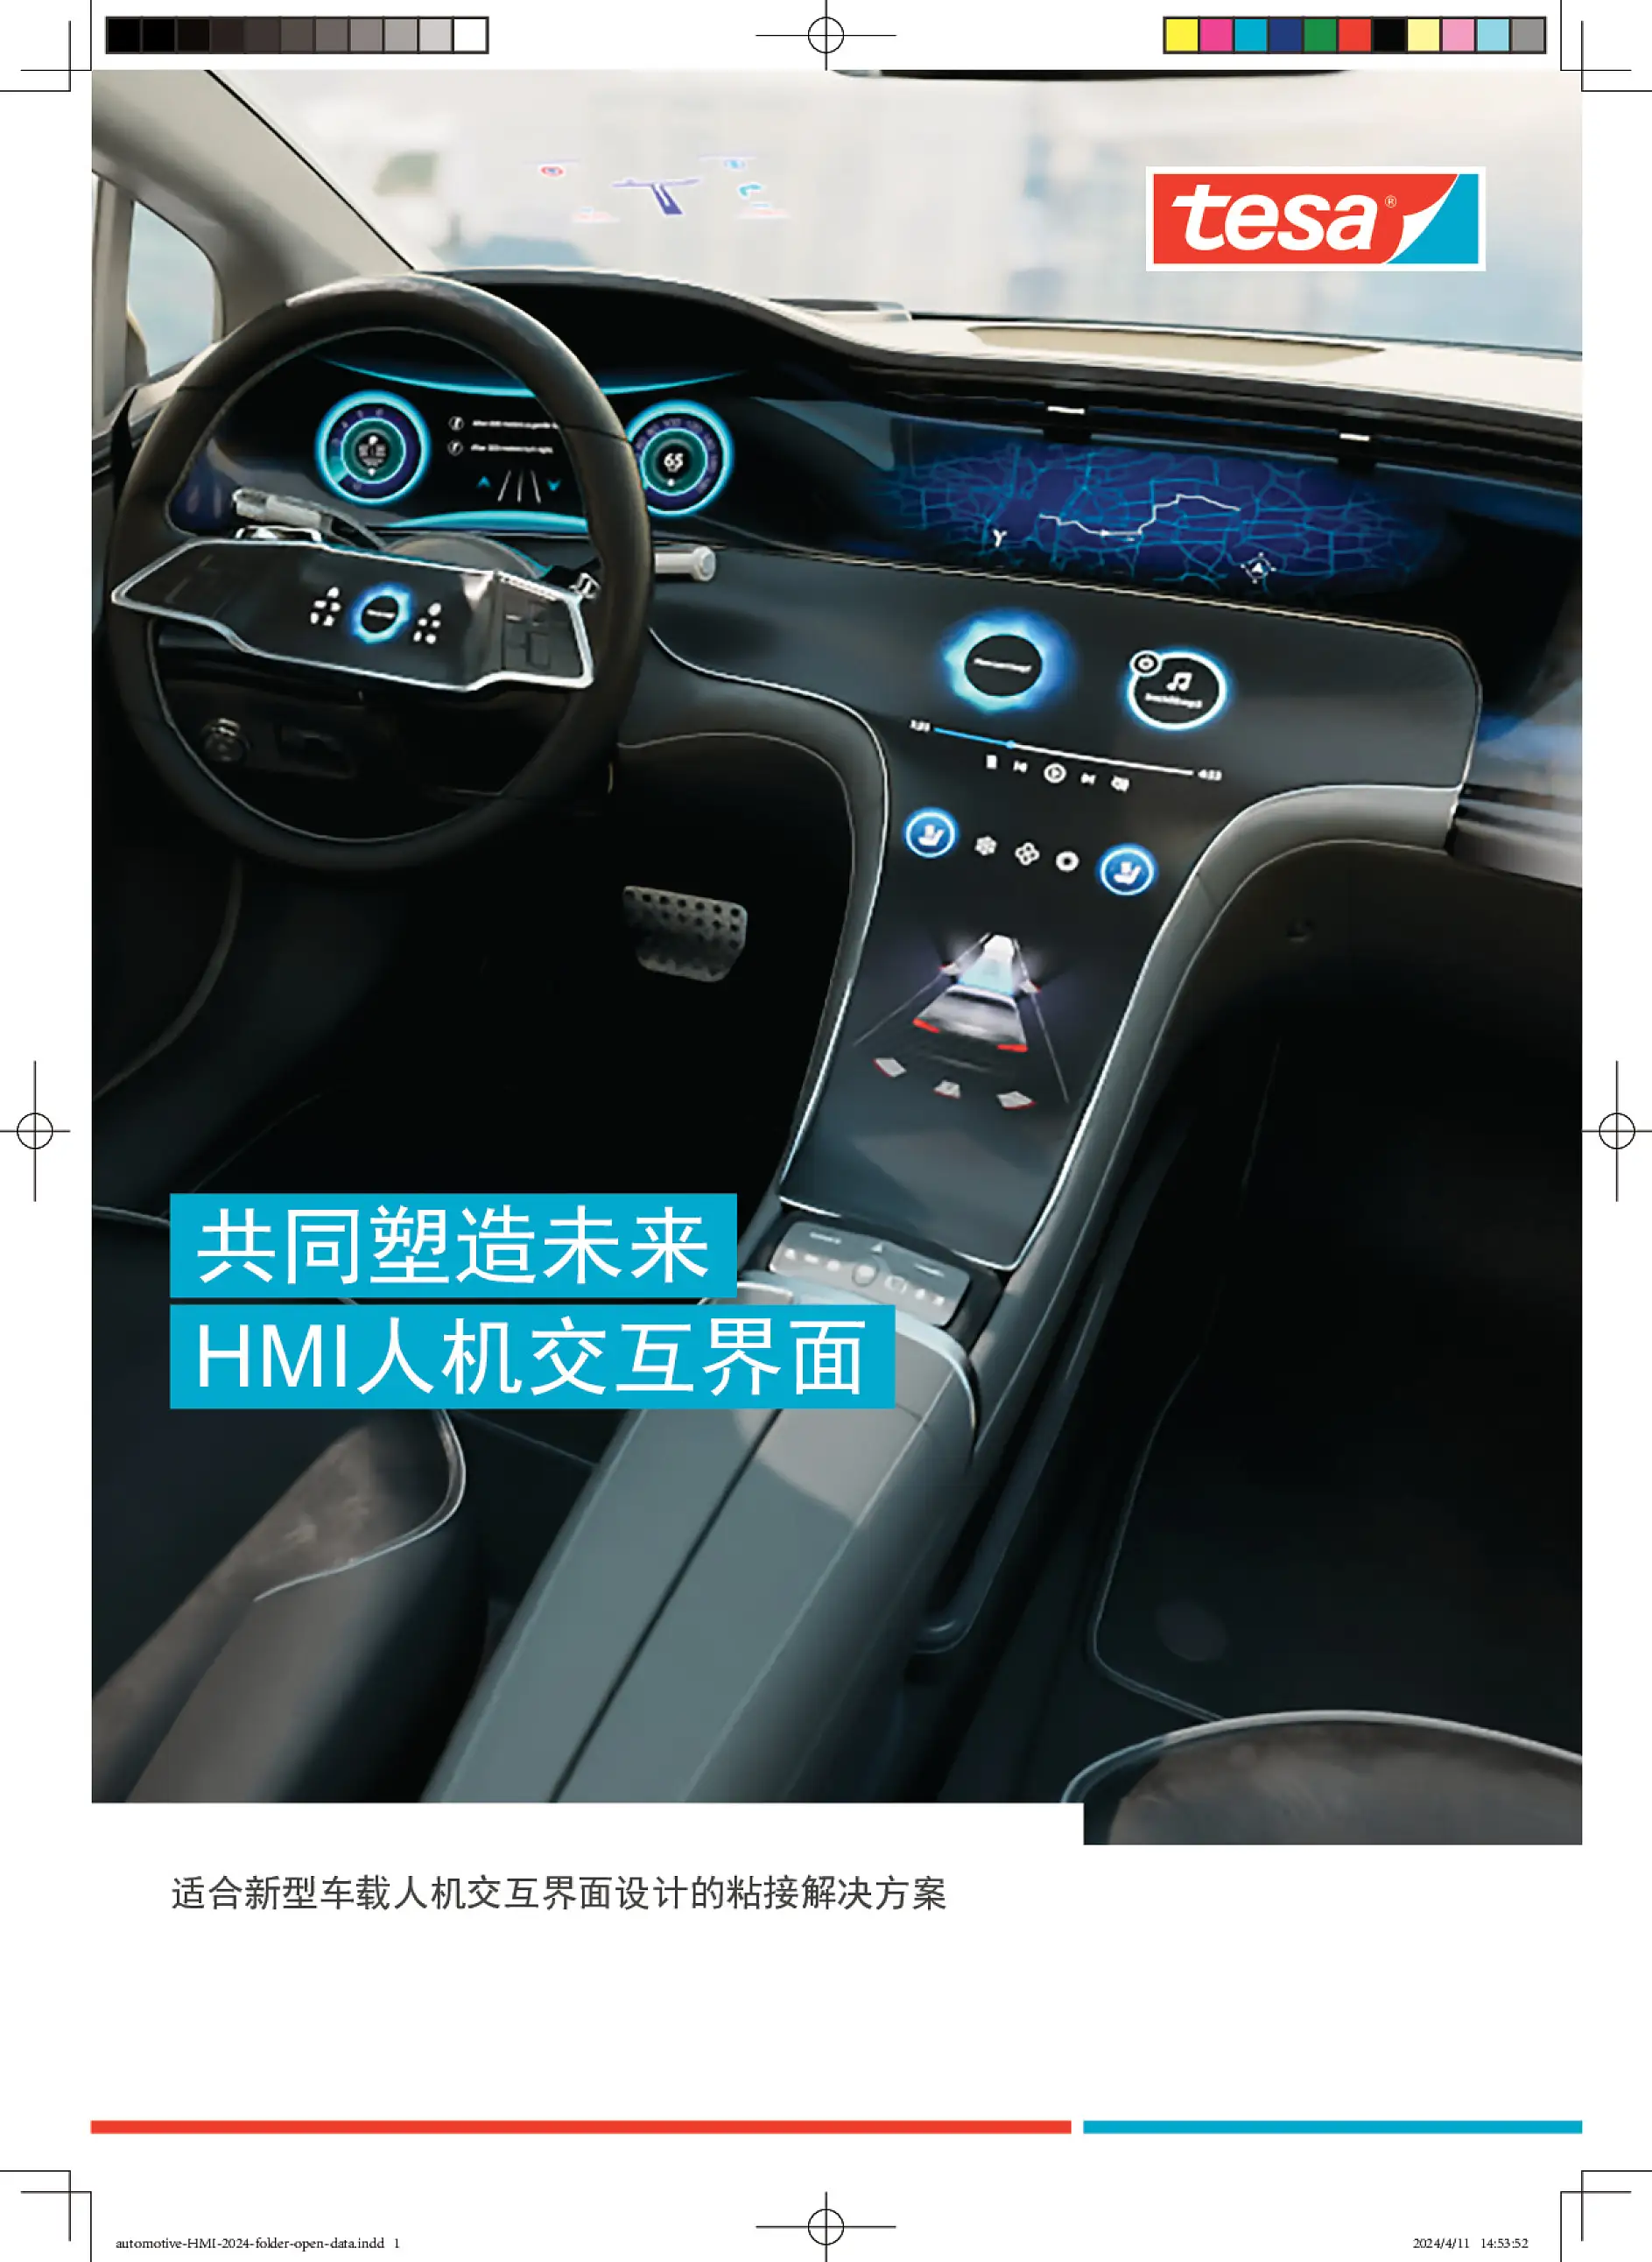 automotive-HMI-2024-folder-open-data(4)